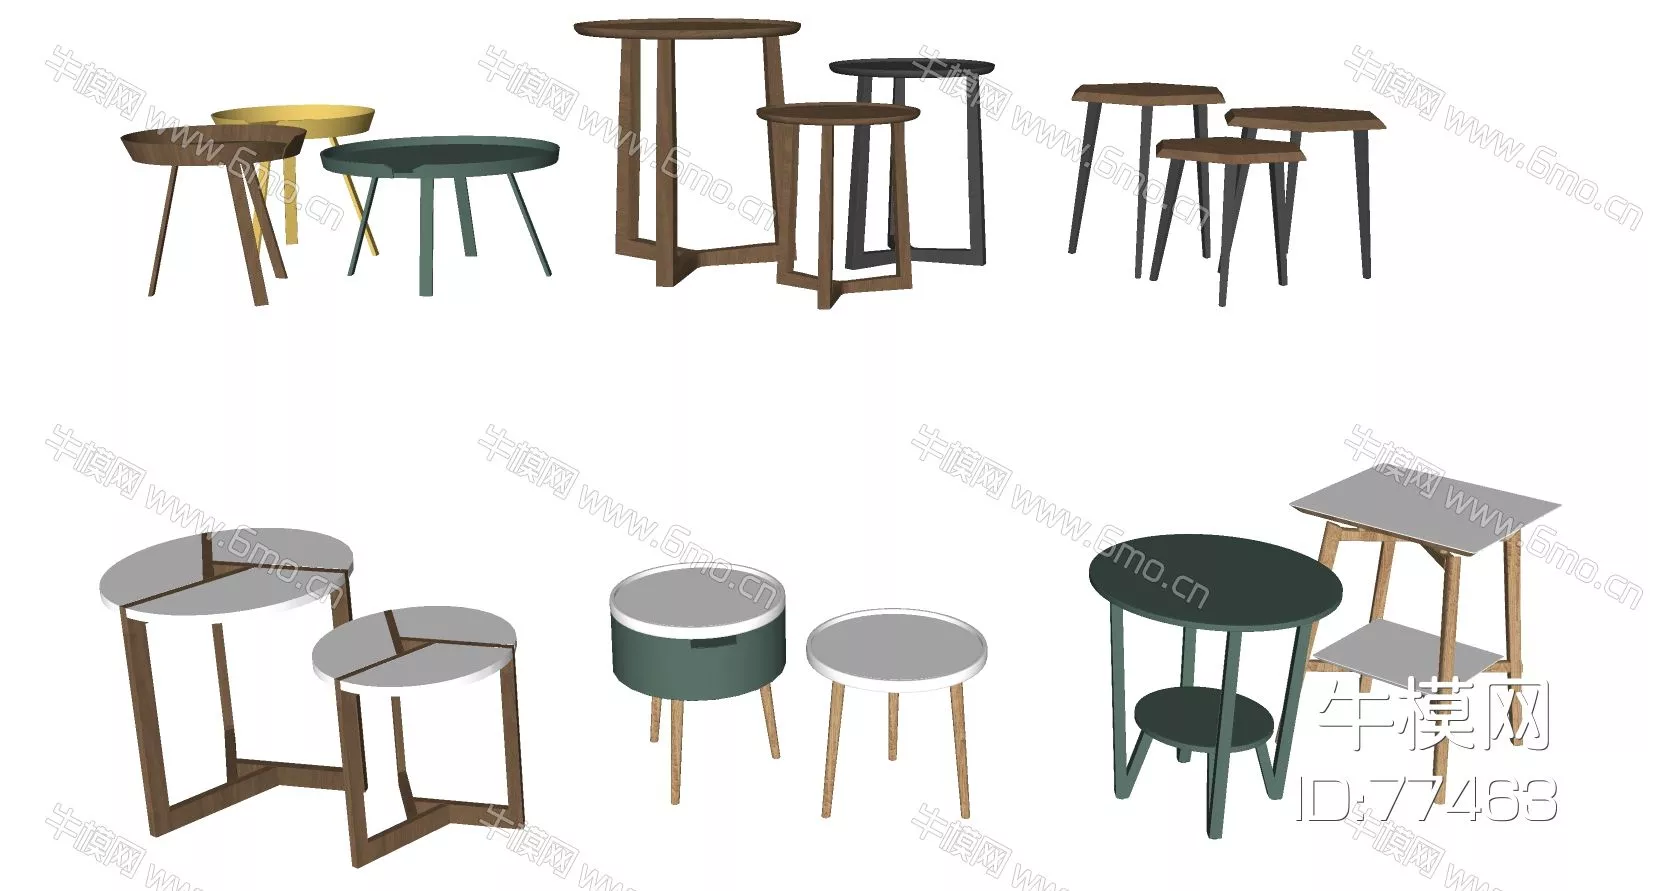 MODERN SIDE TABLE - SKETCHUP 3D MODEL - ENSCAPE - 77463